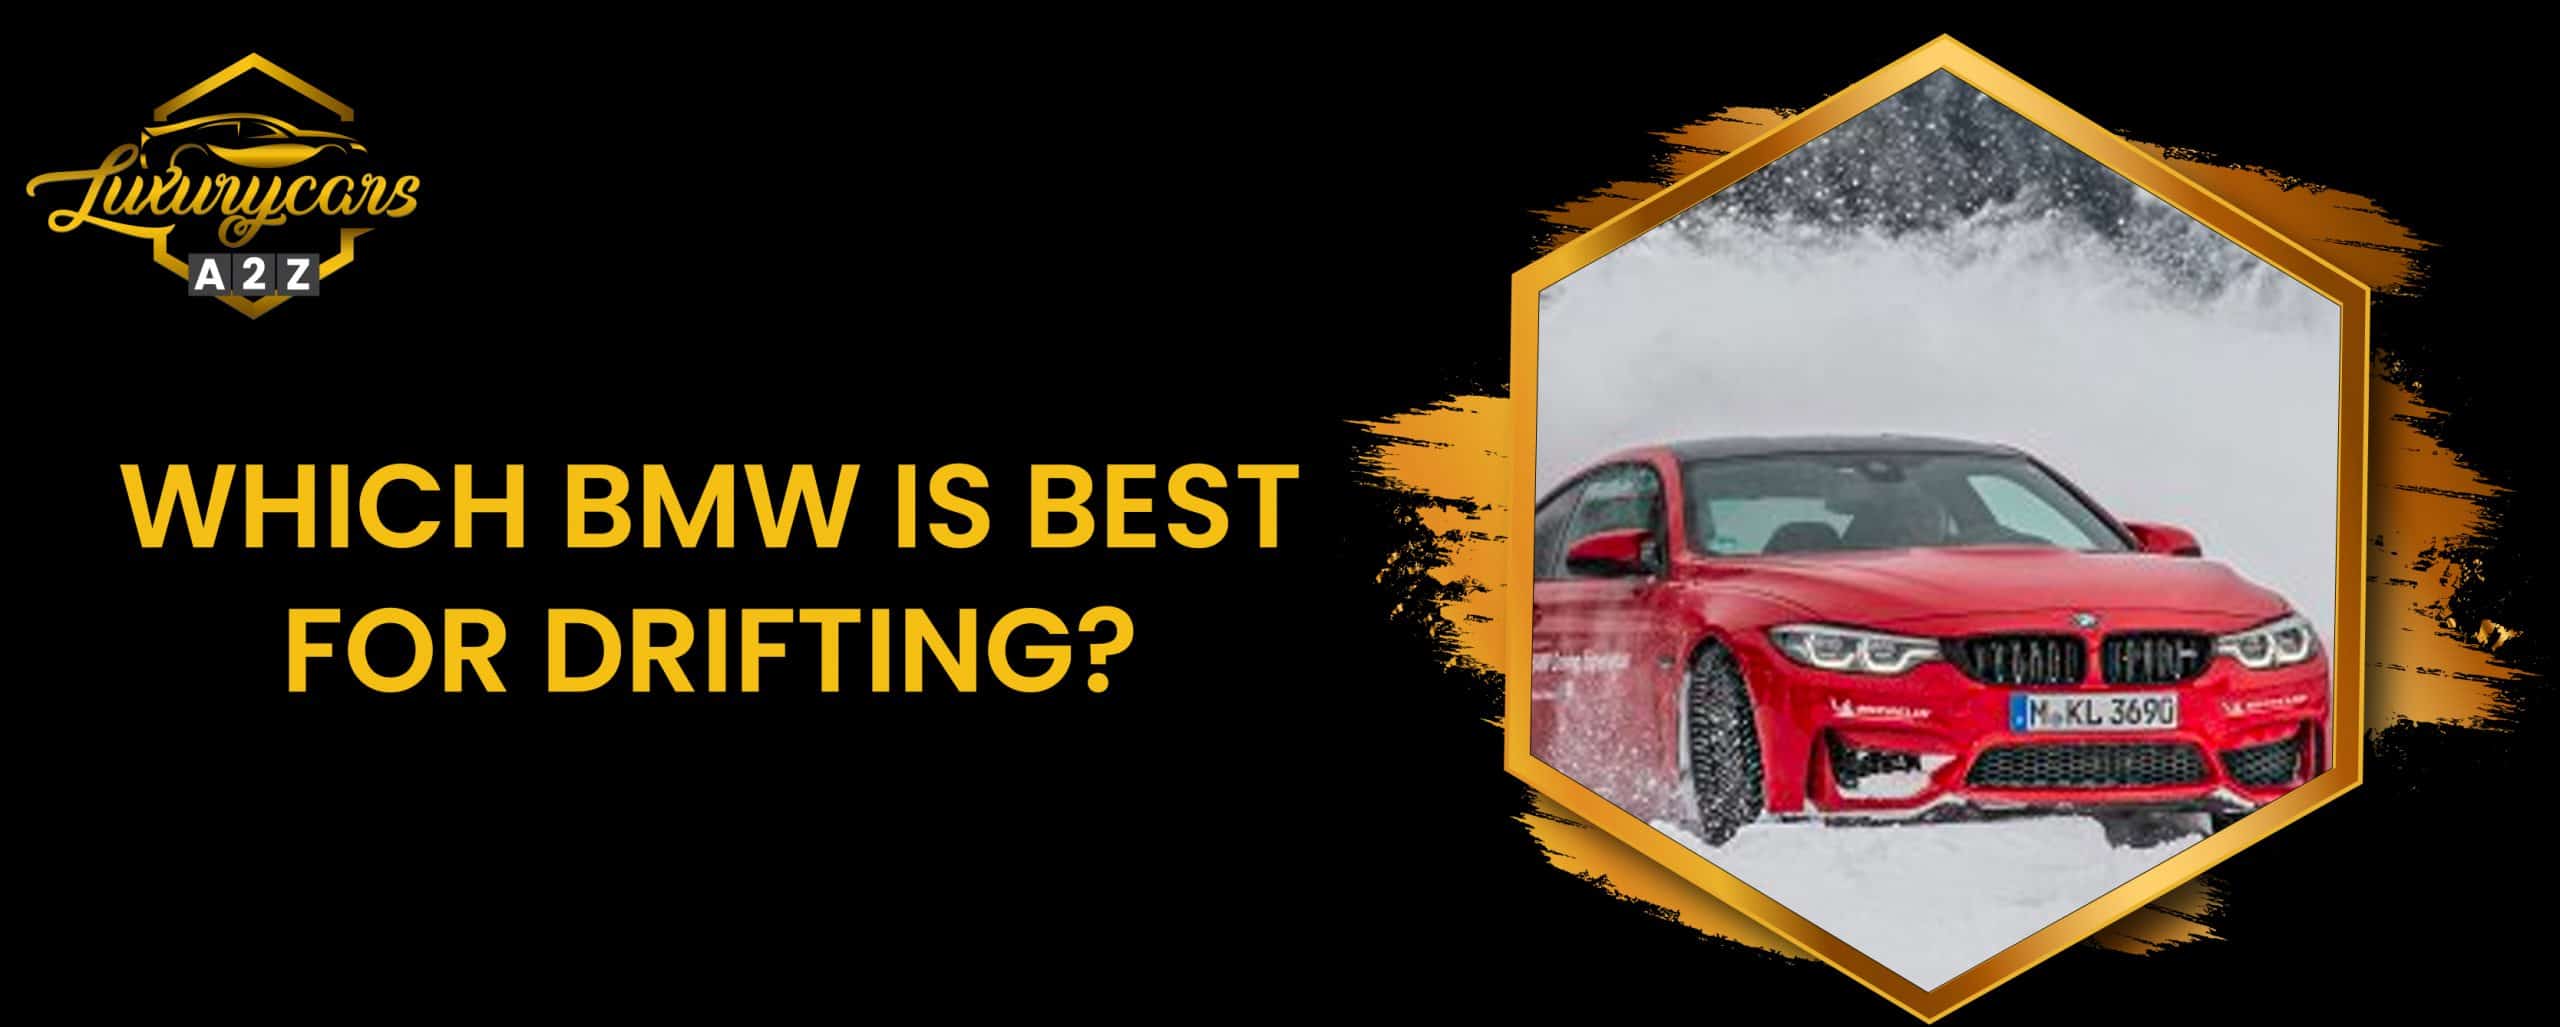 Quelle BMW est la meilleure pour le drift ?